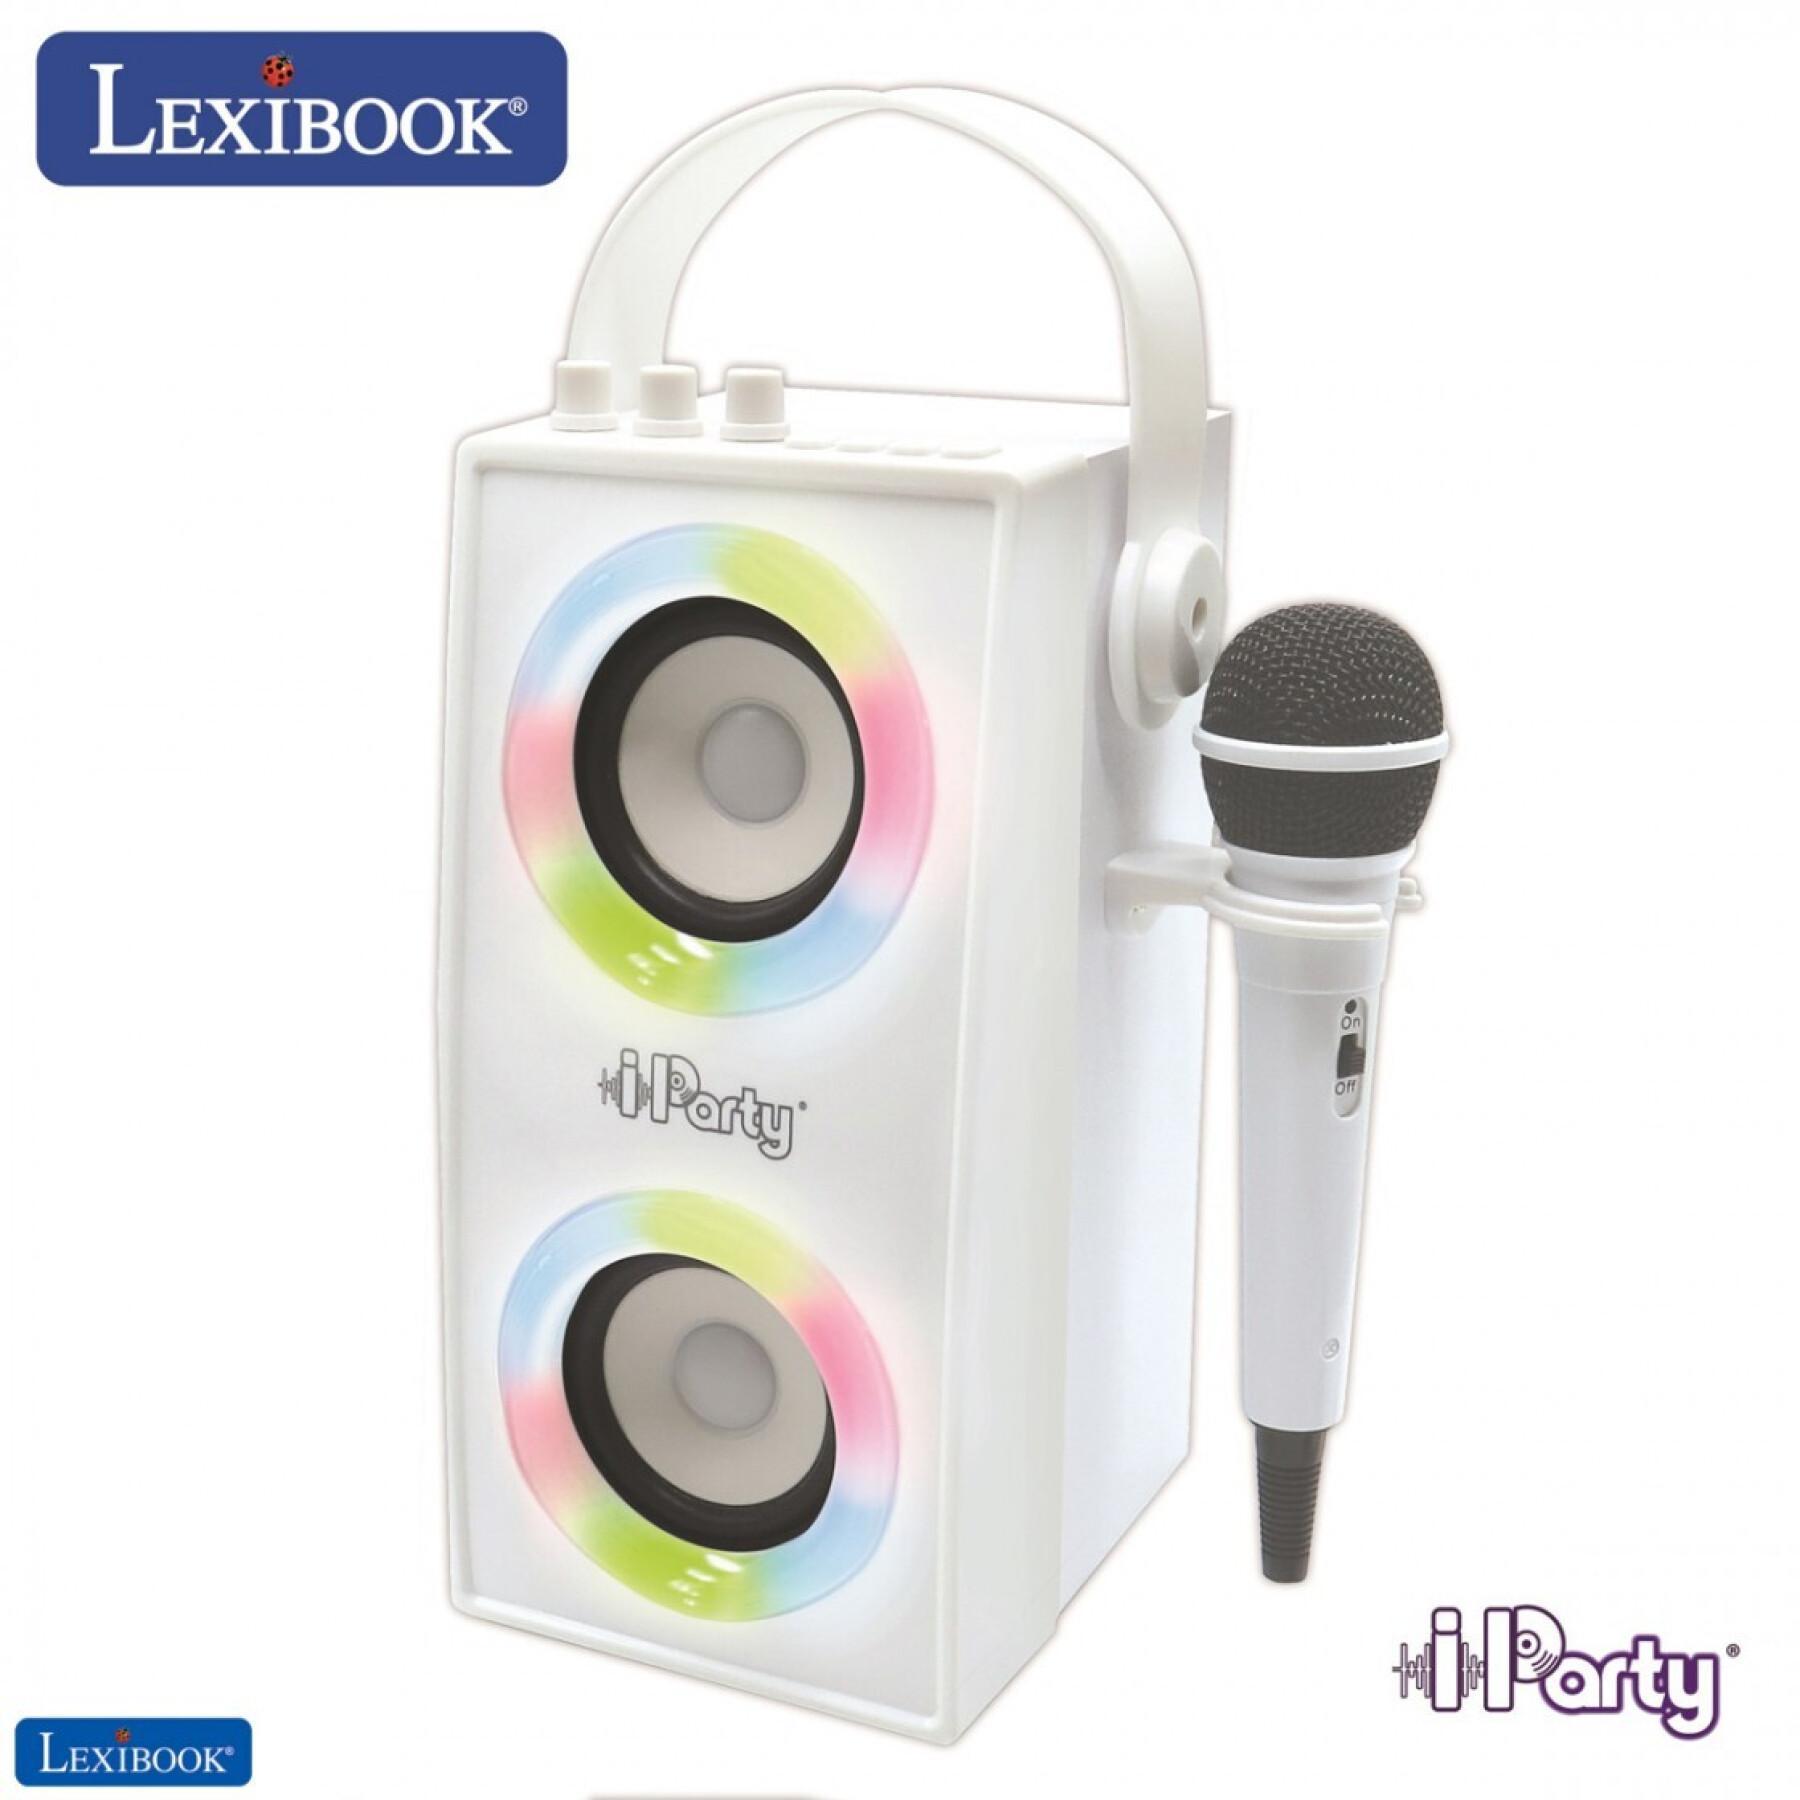 Altoparlante portatile bluetooth® di tendenza + microfono ed effetti luminosi Lexibook IParty®